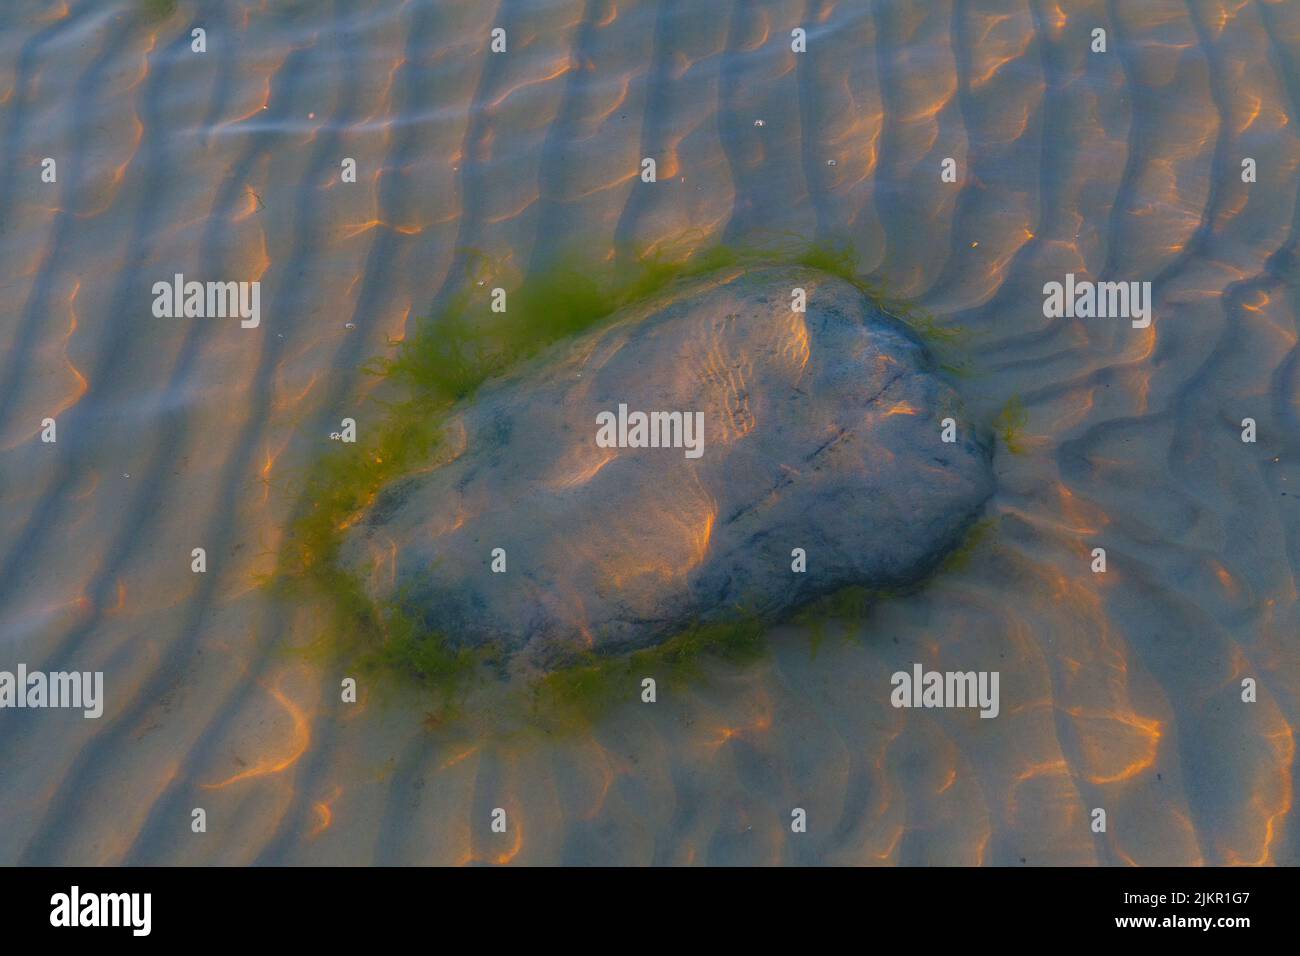 Pietra con alghe sotto l'acqua con riflessi ondulati della luce del sole Foto Stock